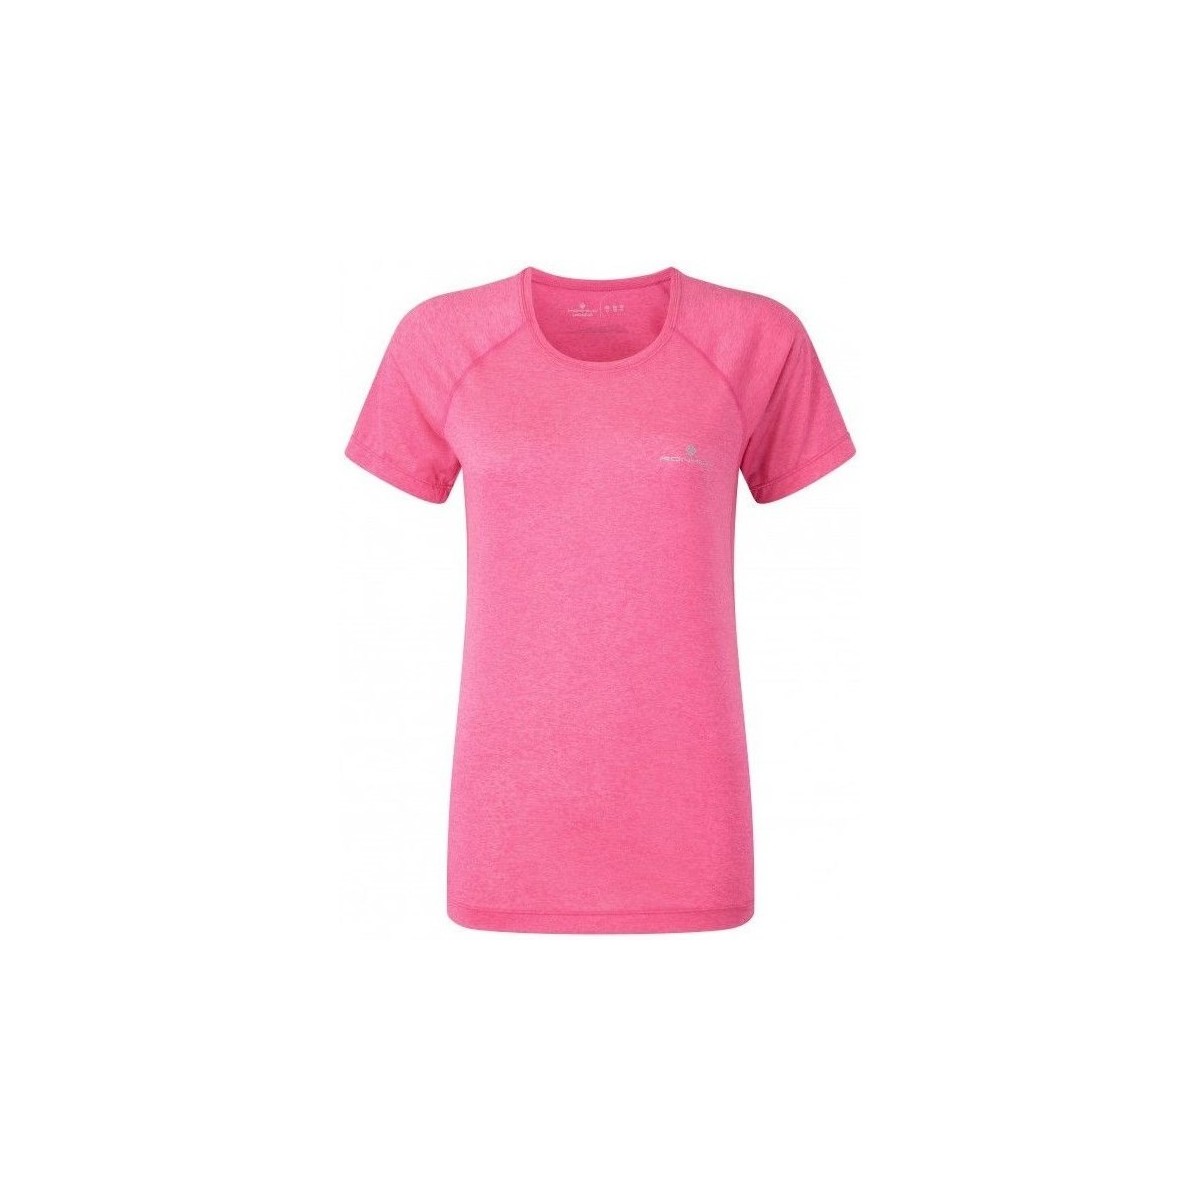 Textil Ženy Trička s krátkým rukávem Ronhill Aspiration Motion SS Tee Růžová